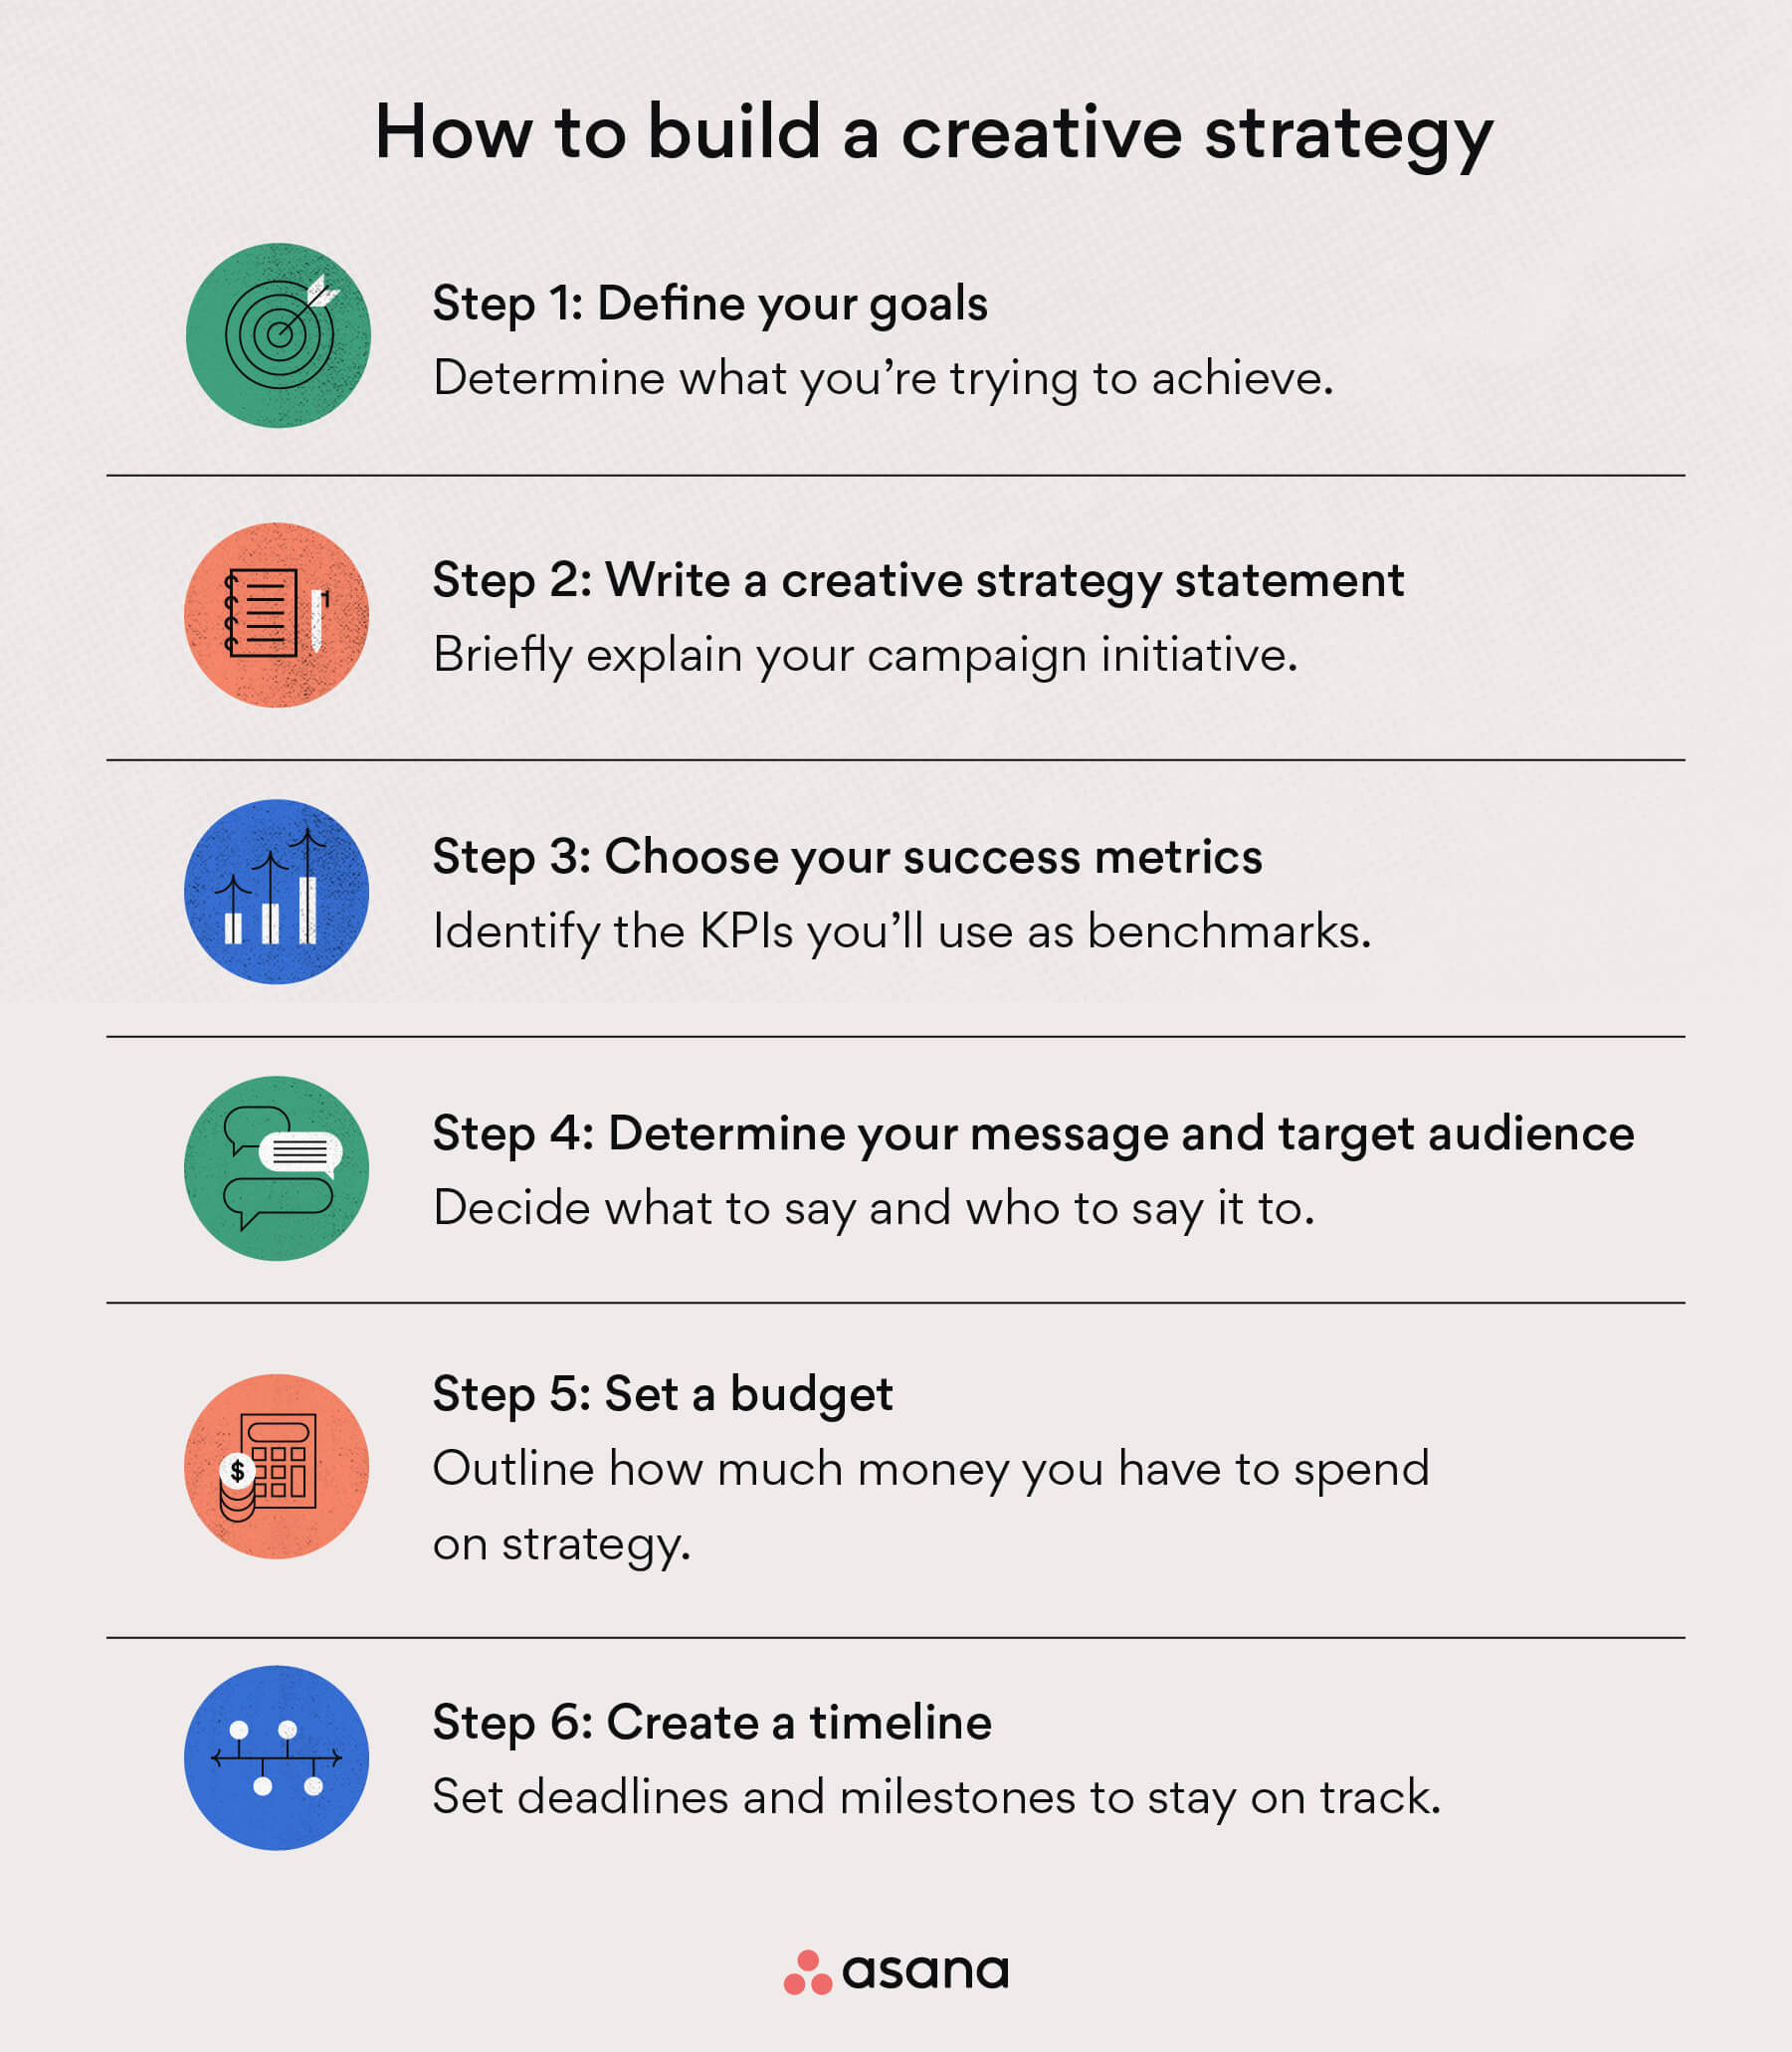 Eine kreative Strategie in sechs Schritten